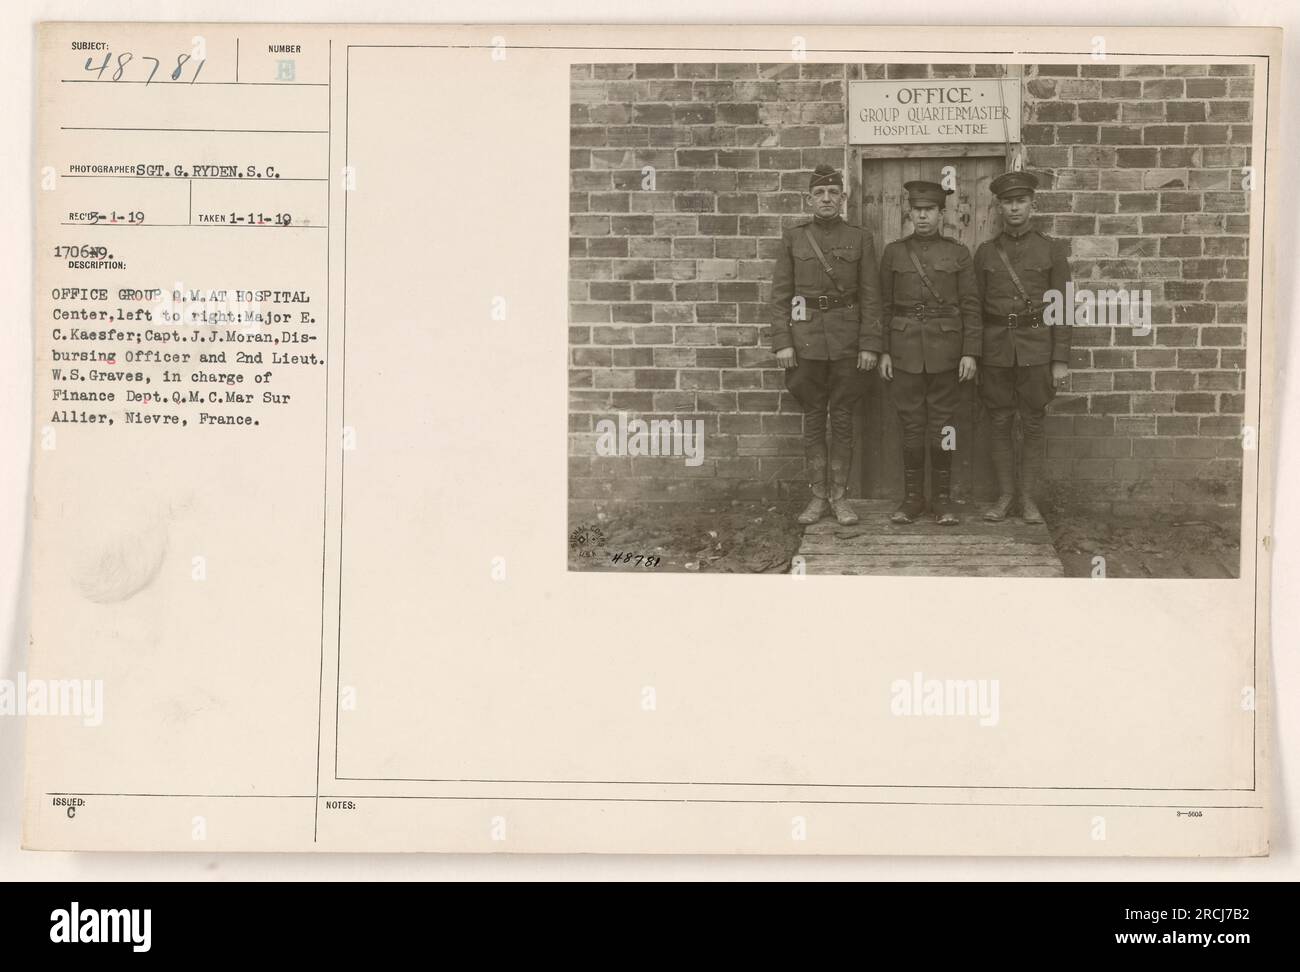 Office Group Q.M. im Krankenhaus-Center. Abbildung von links nach rechts: Major E. C. Kaesfer, Captain J. J. Moran, auszahlender Offizier, und 2. Lieutenant W. S. Graves, der die Finanzabteilung des Quartermaster Corps leitet. Dieses Foto wurde im Ersten Weltkrieg in Mar Sur Allier, Nievre, Frankreich, aufgenommen. Stockfoto